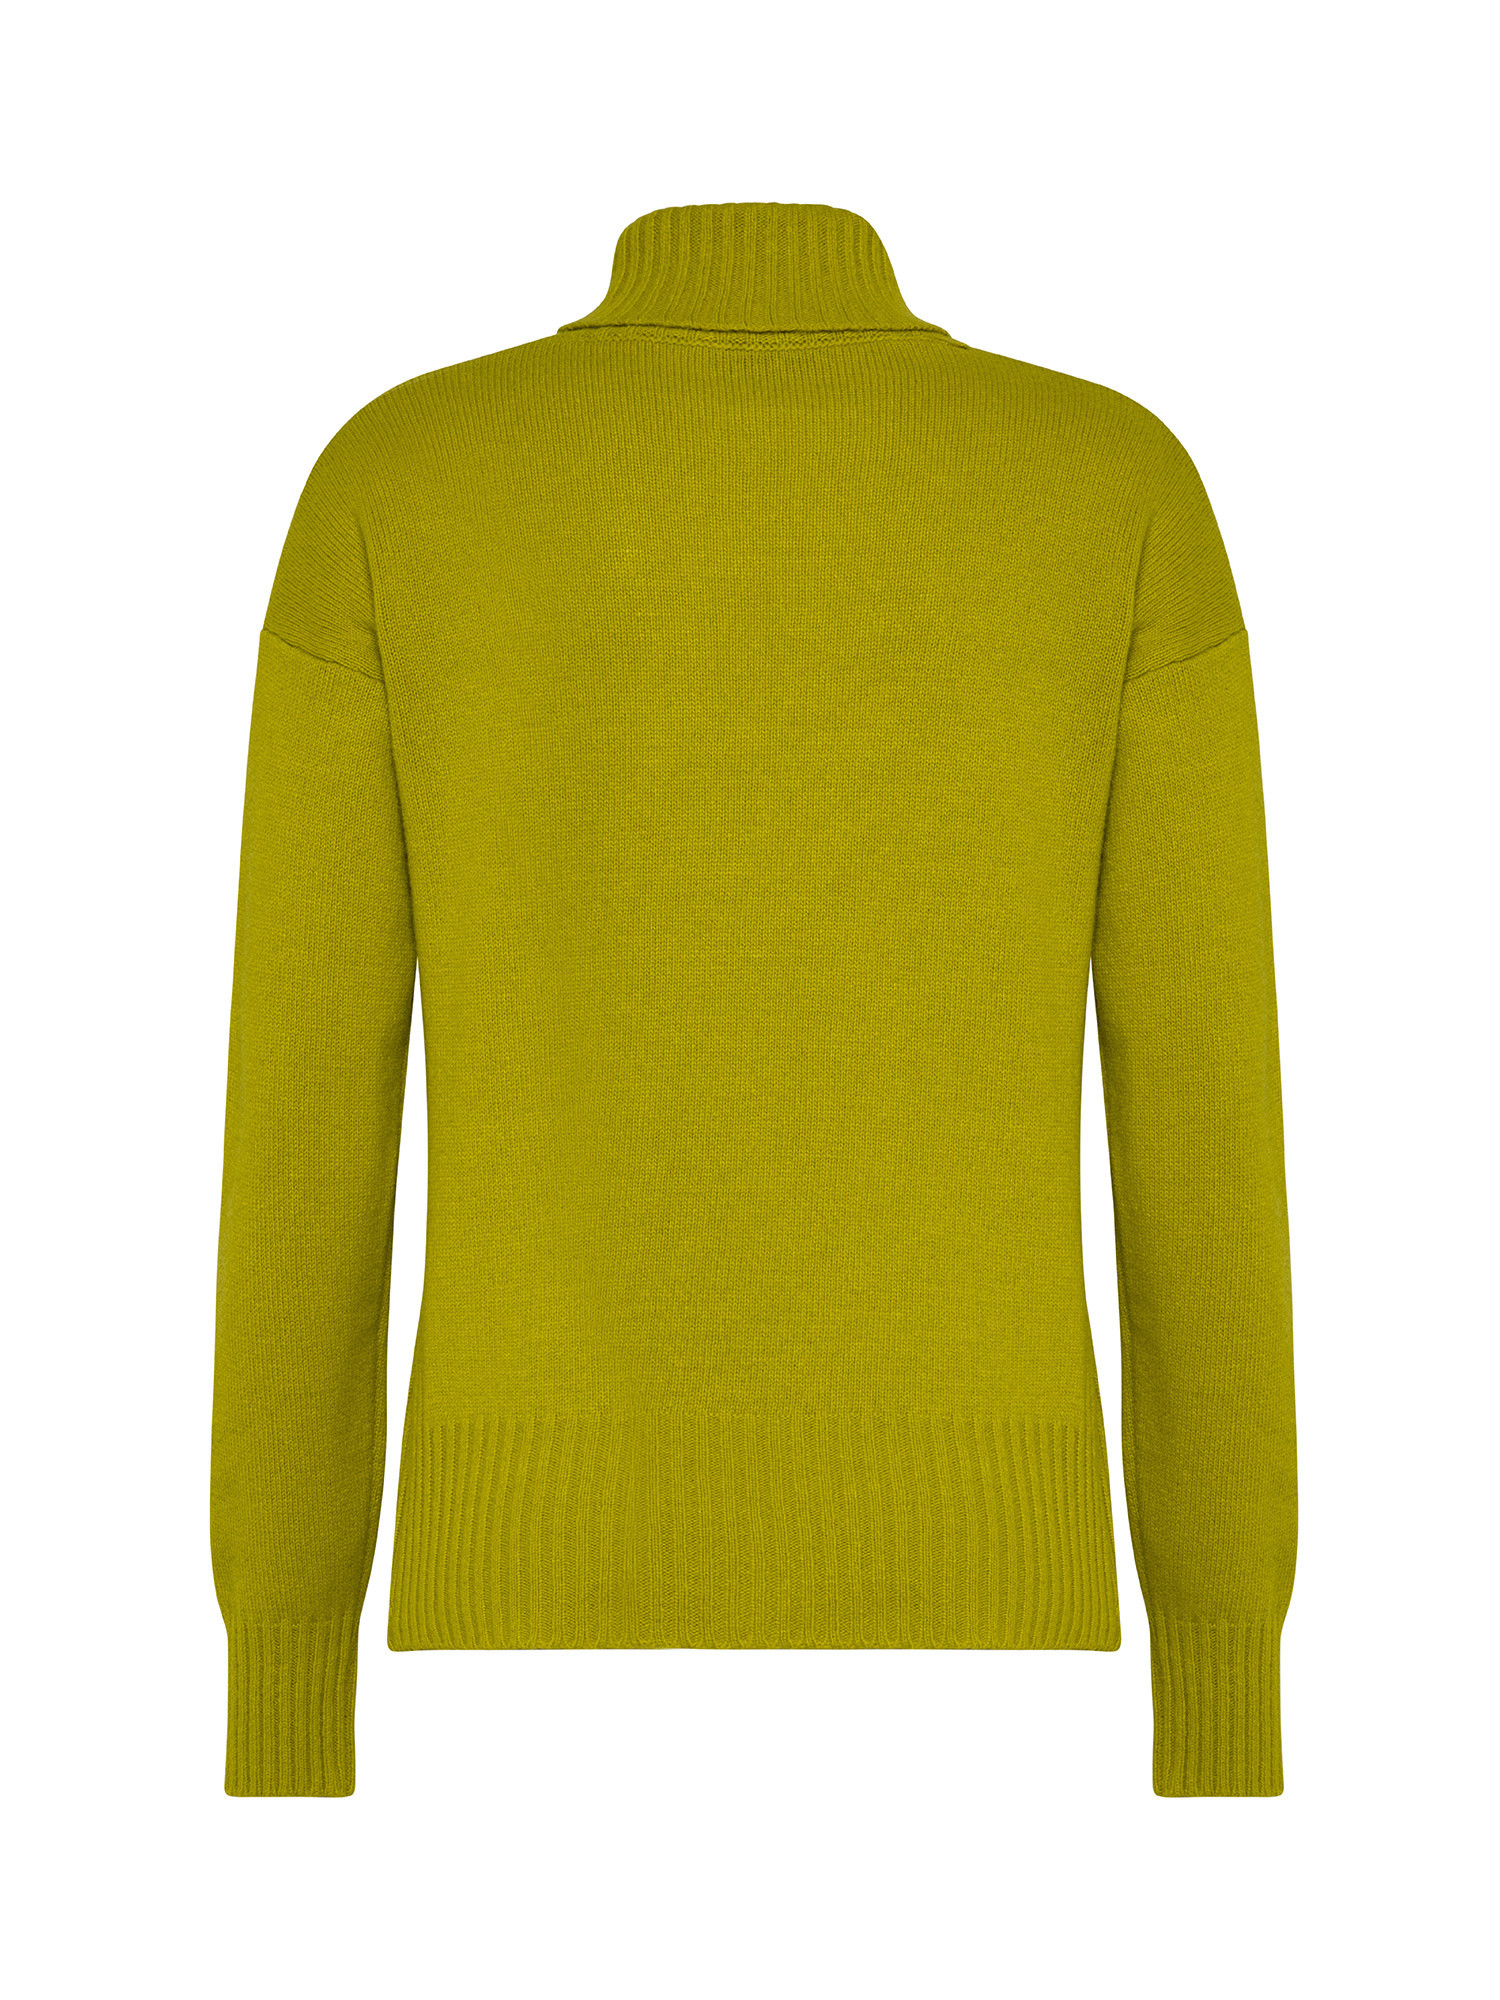 K Collection - Turtleneck sweater, Acid Green, large image number 1